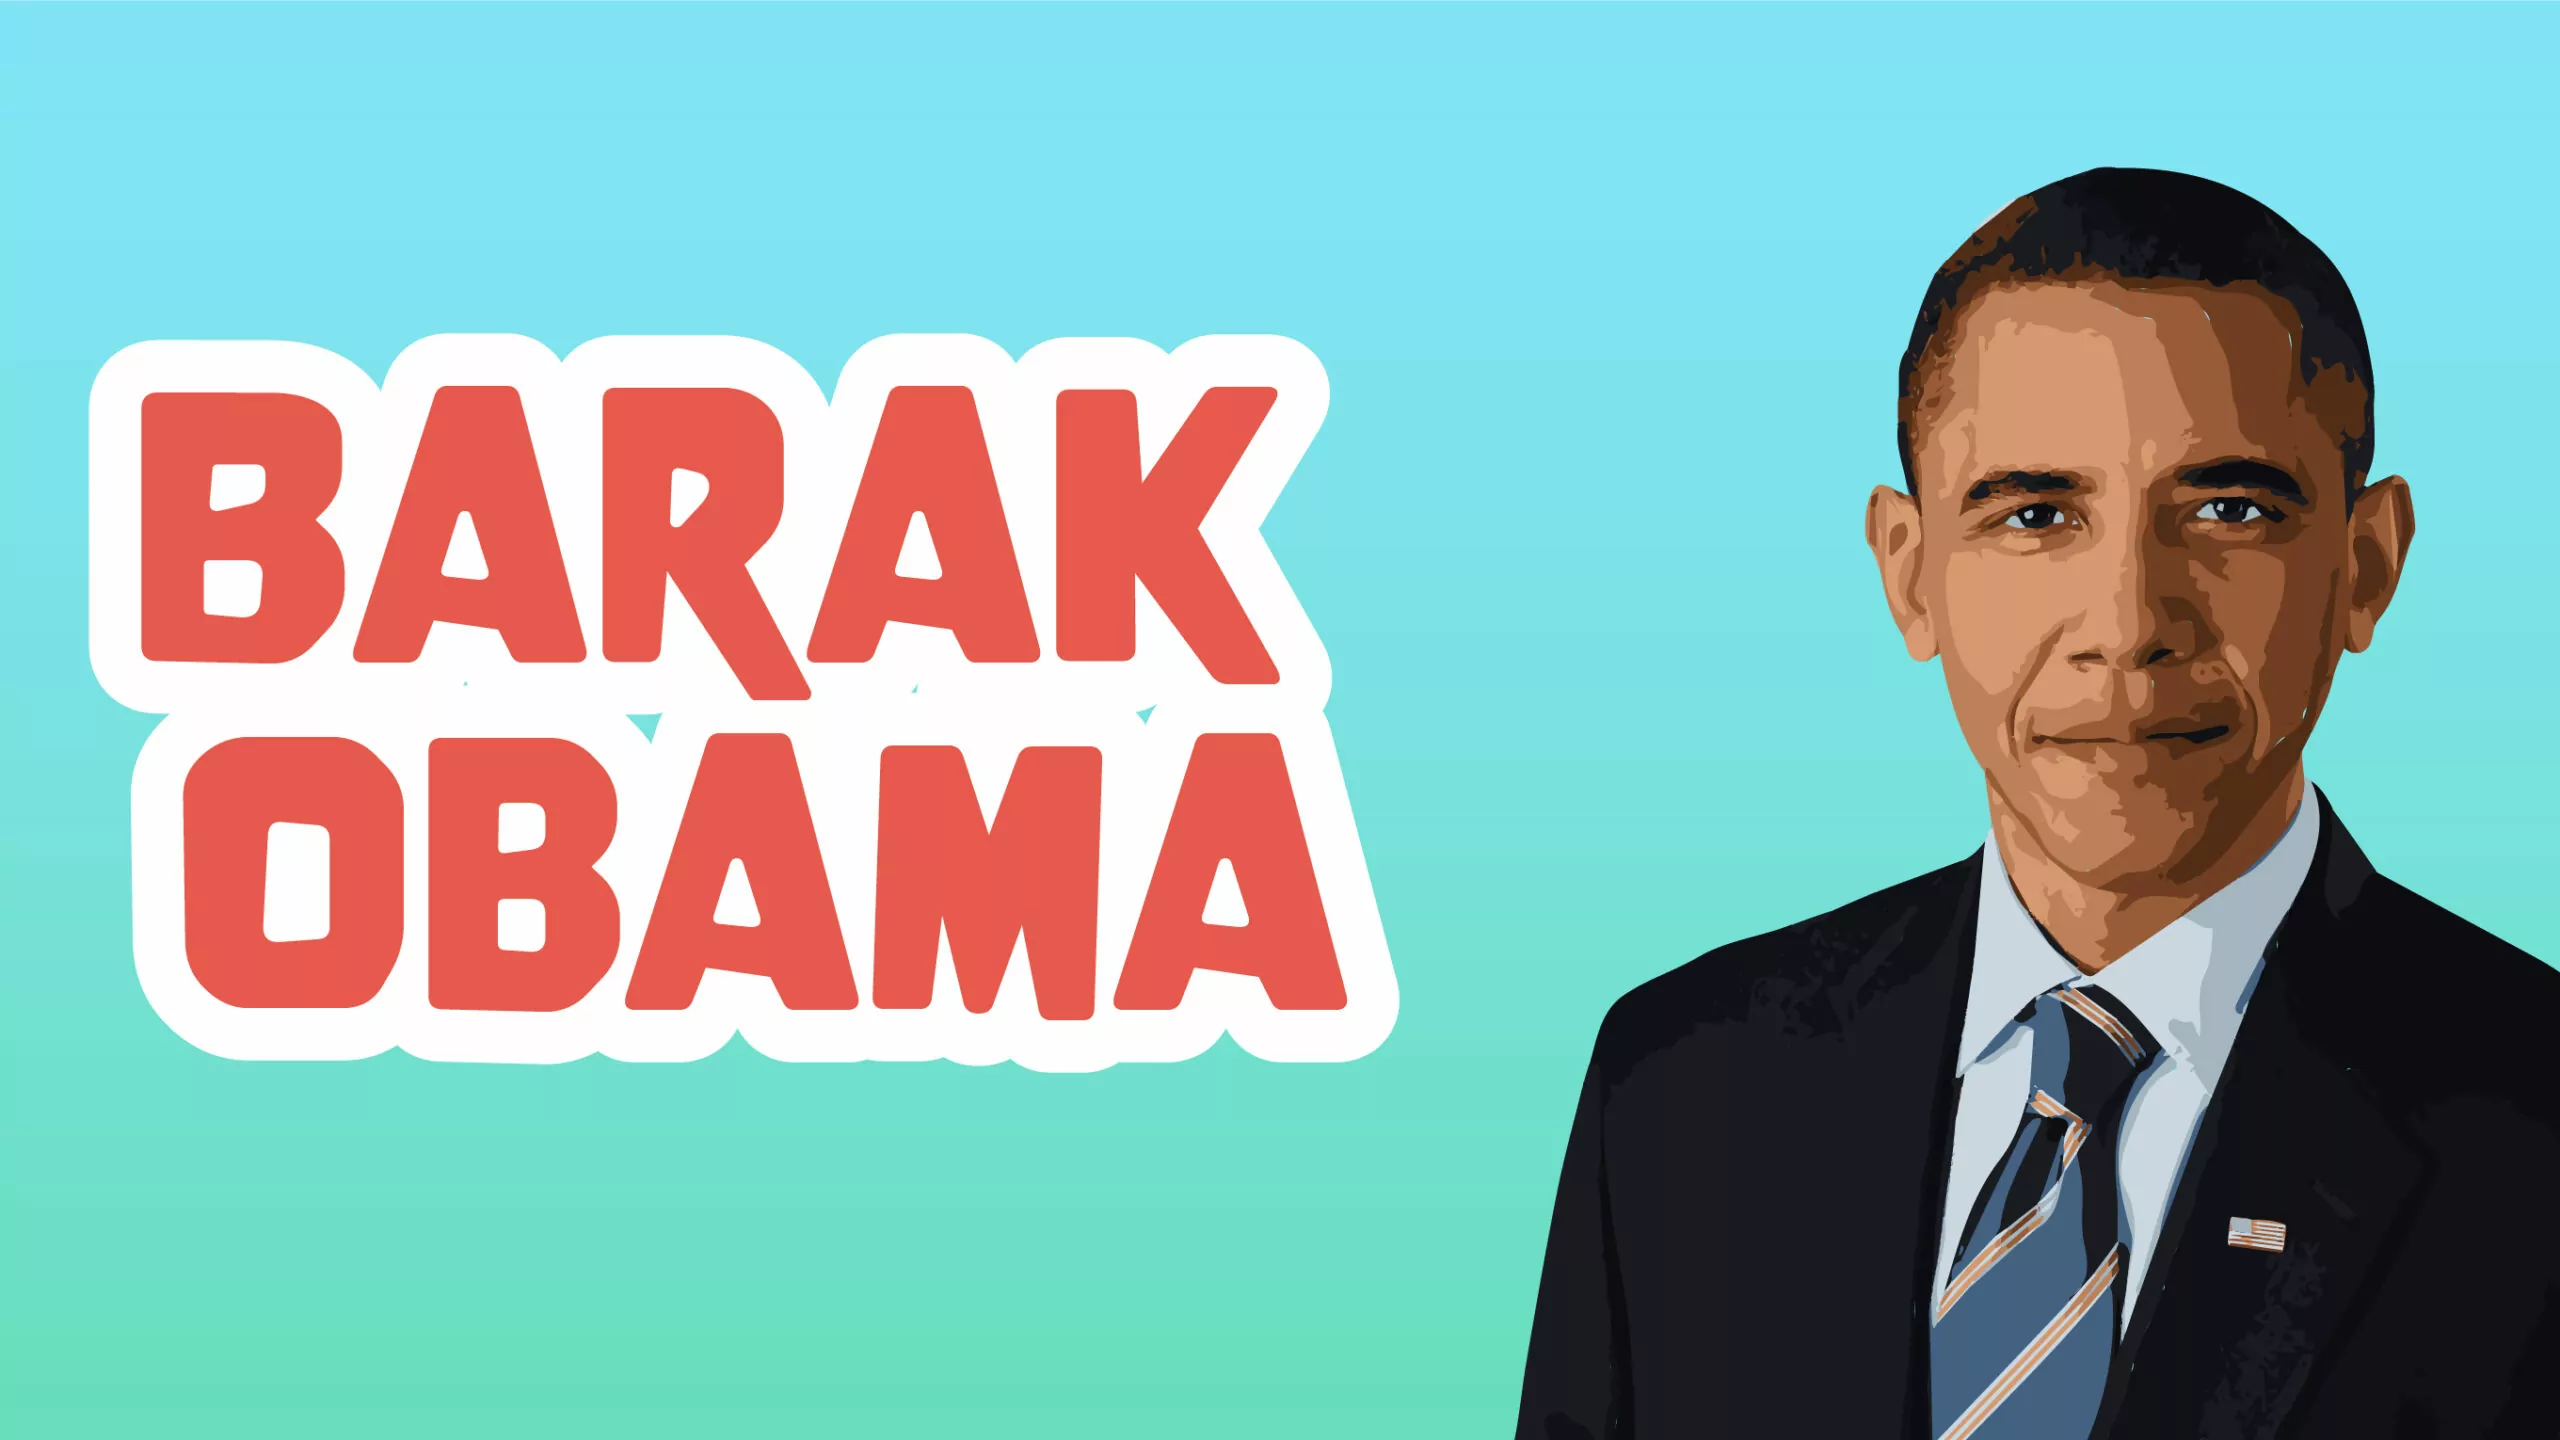 Barack Obama Facts for Kids – 5 Brilliant Facts about Barack Obama